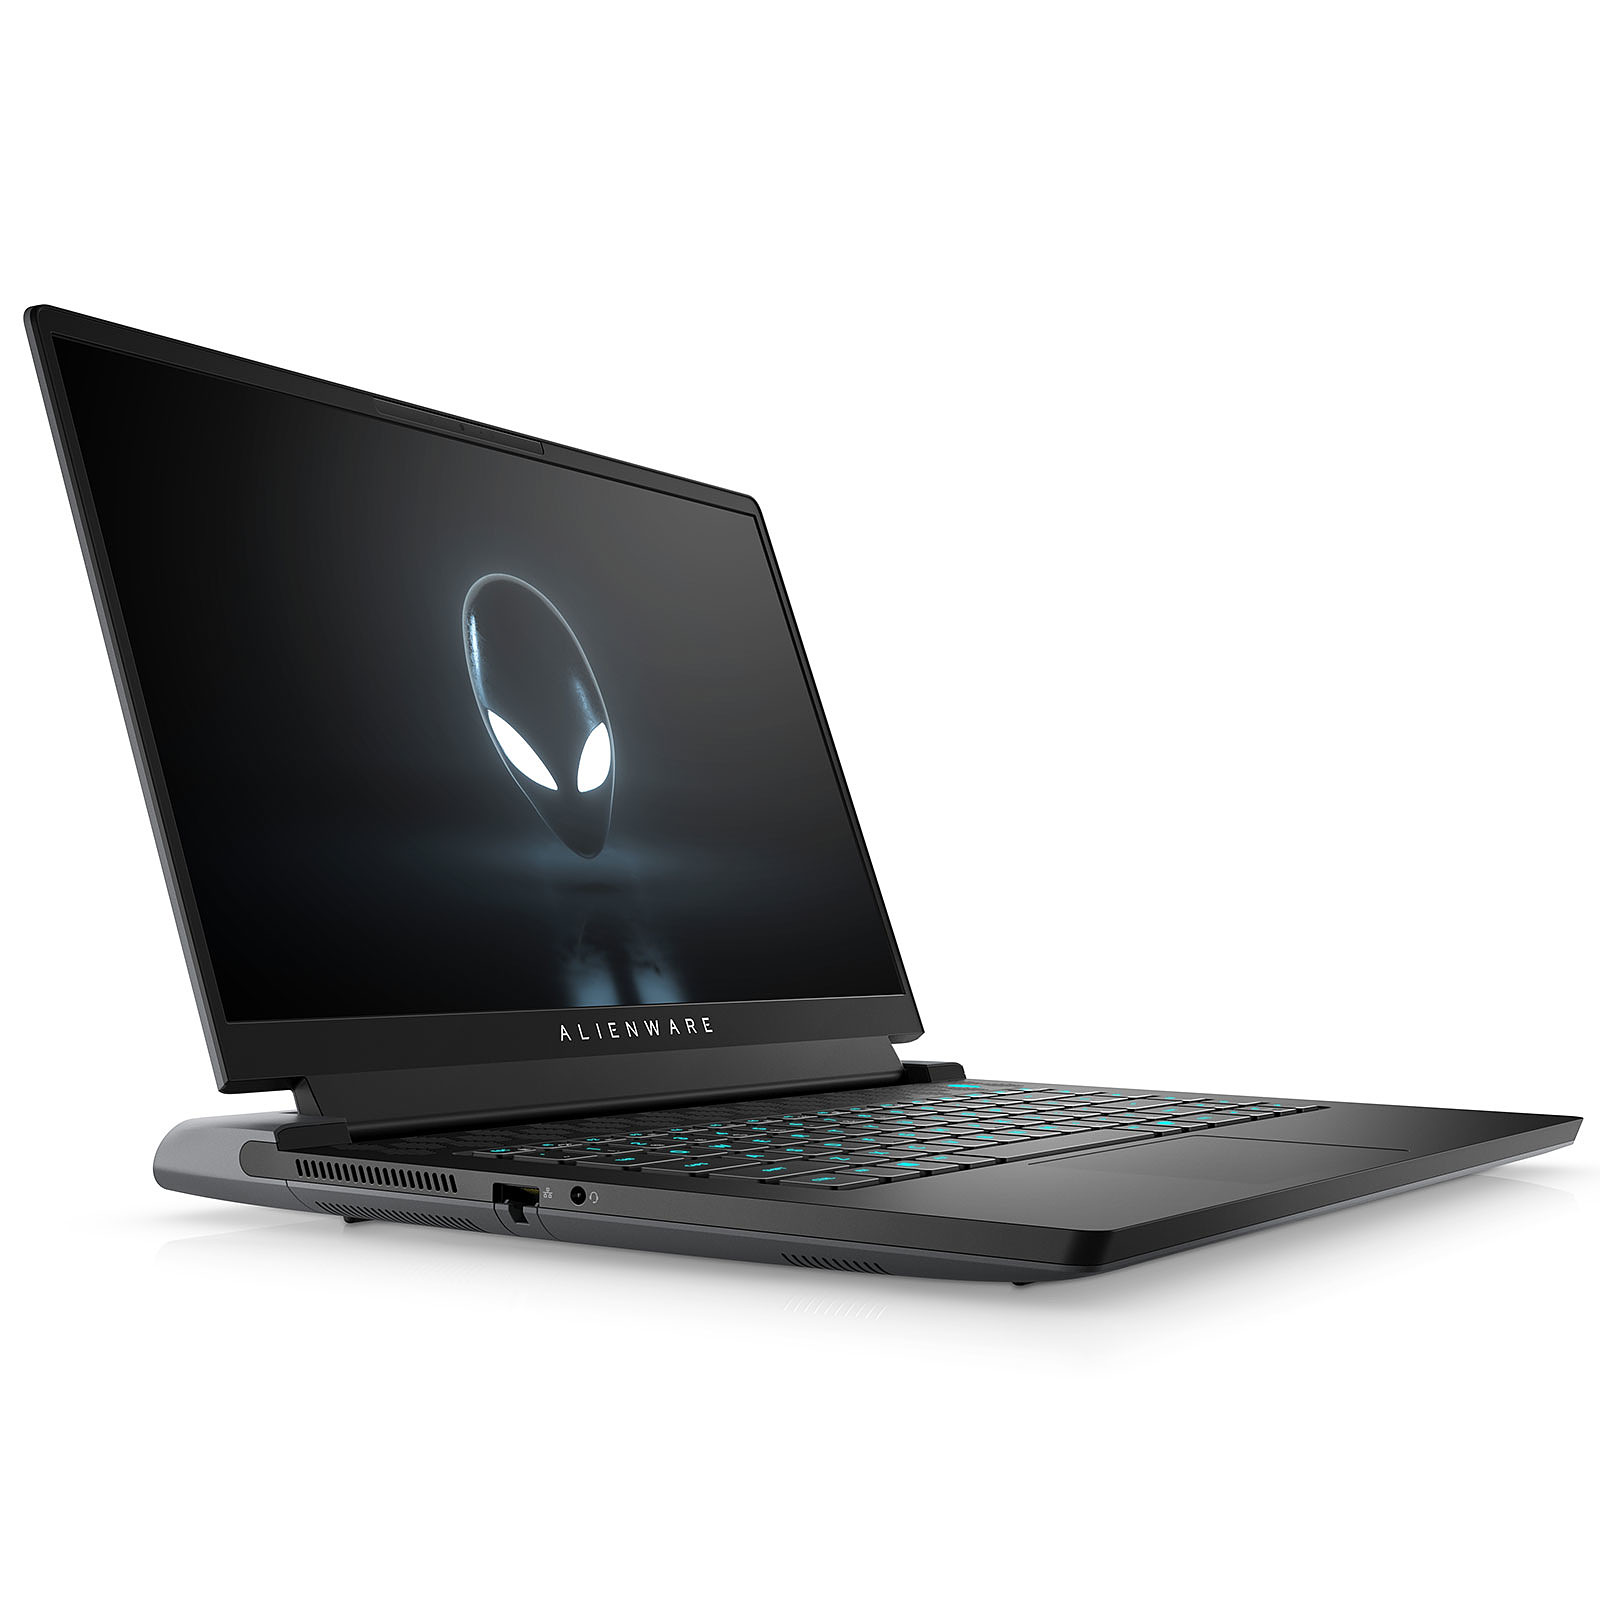 Alienware m15 R6-174 · Occasion - PC portable Alienware - Occasion